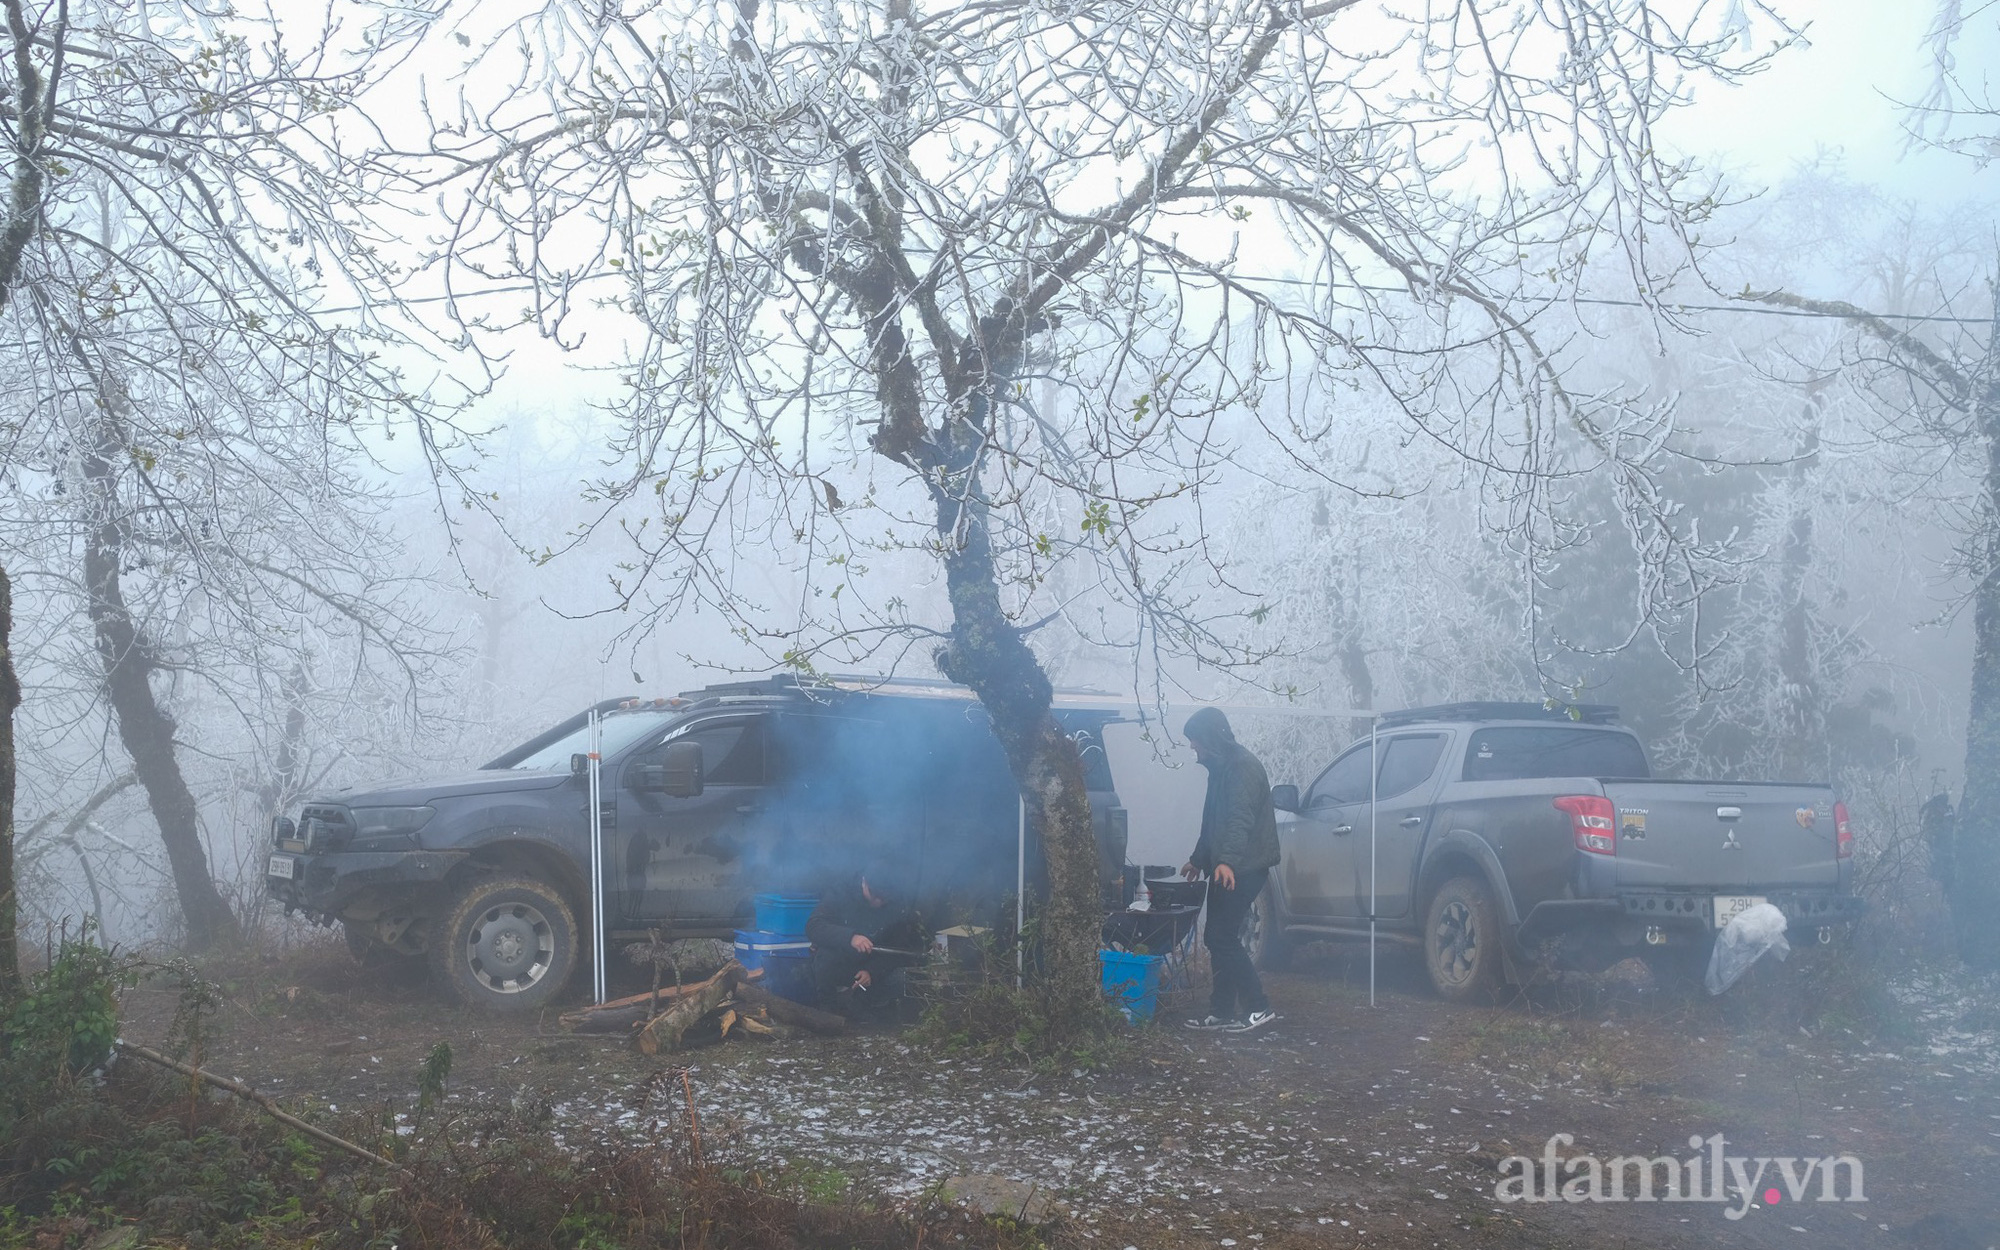 Sức hút của Y Tý mùa băng giá: Du khách chạy ô tô vượt hàng trăm cây số tới Ngải Thầu, cắm trại xuyên đêm "canh" tuyết